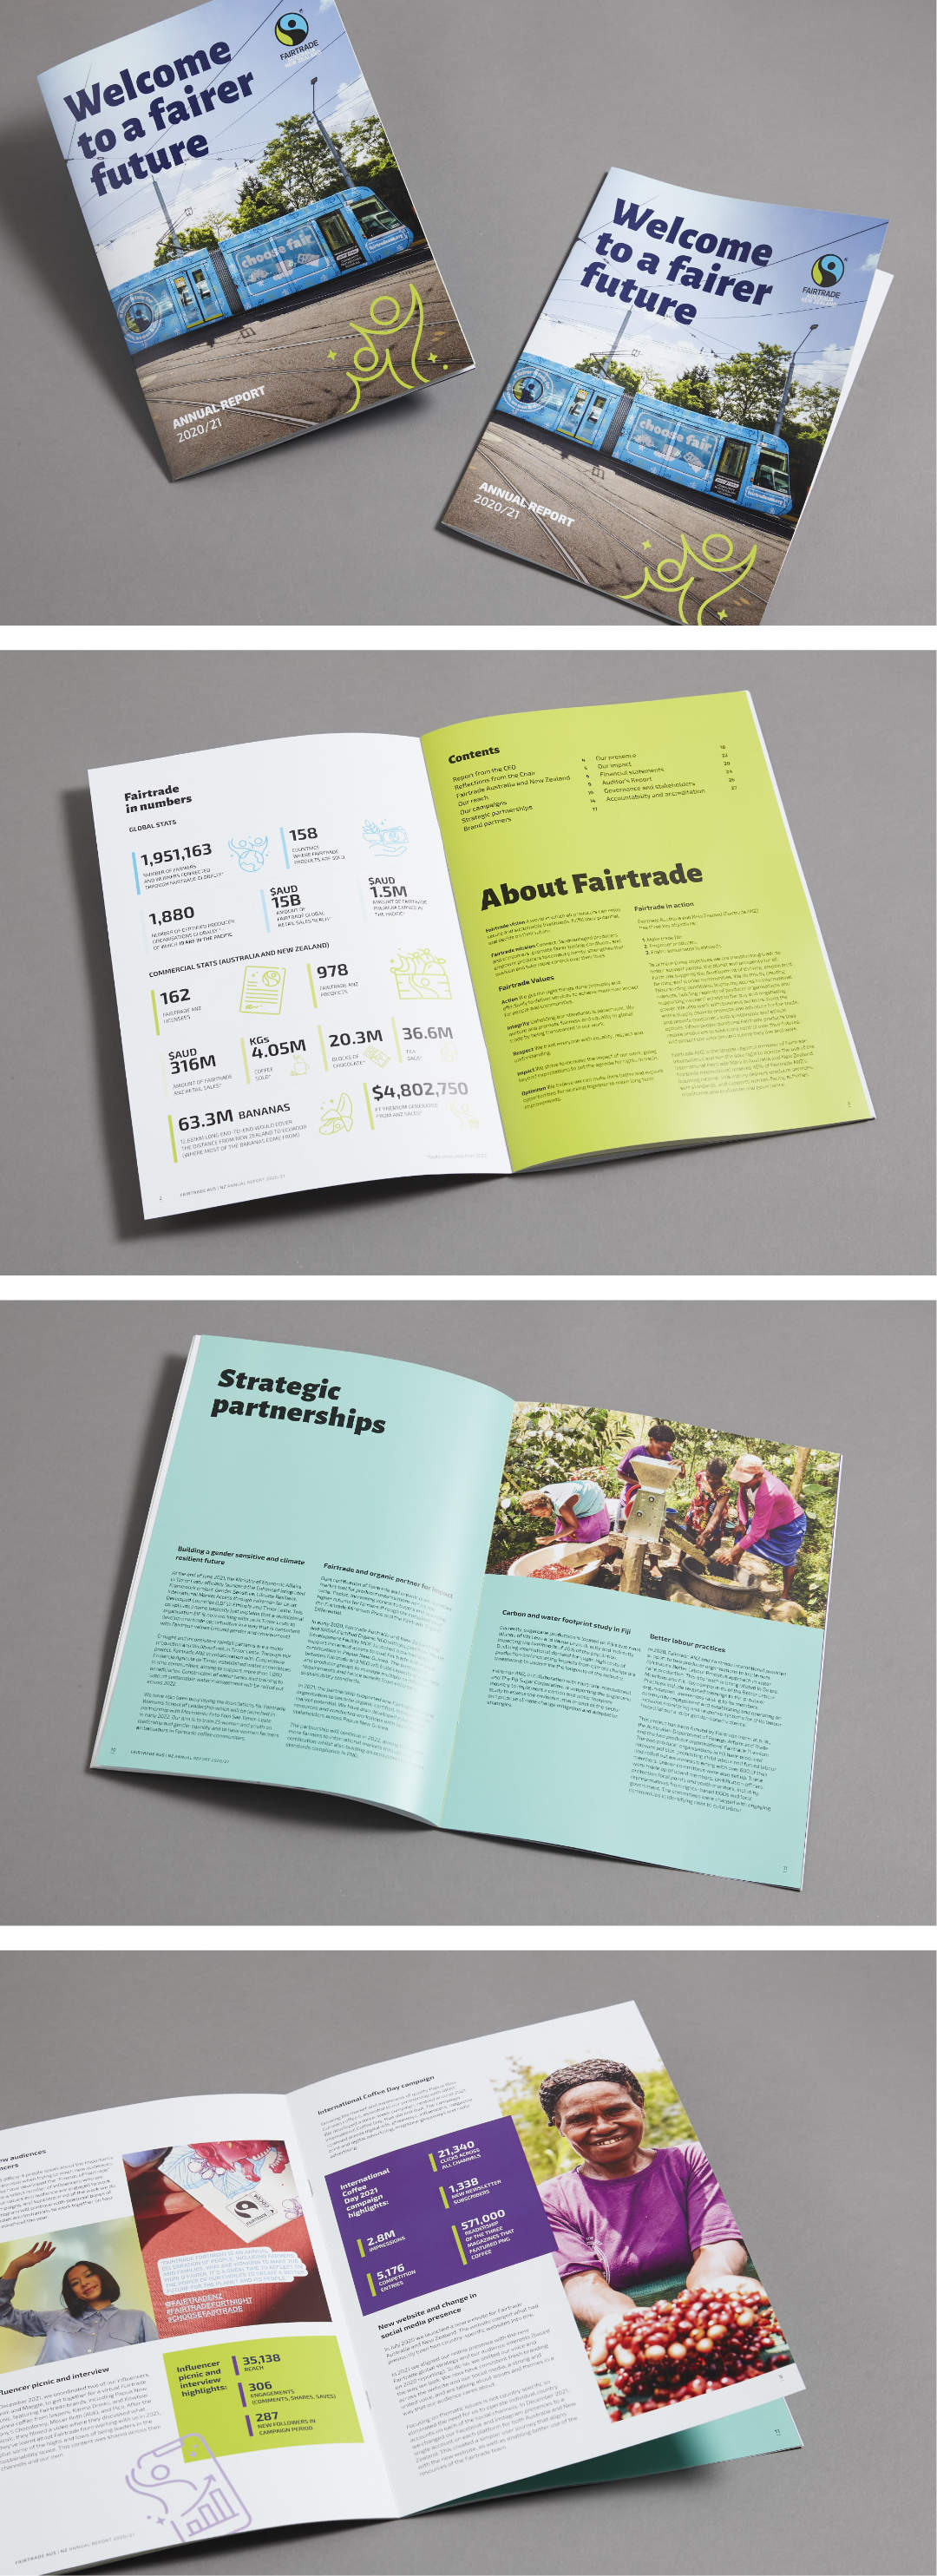 Annual report design Melbourne graphic design services by Christie Davis Design for Fairtrade.